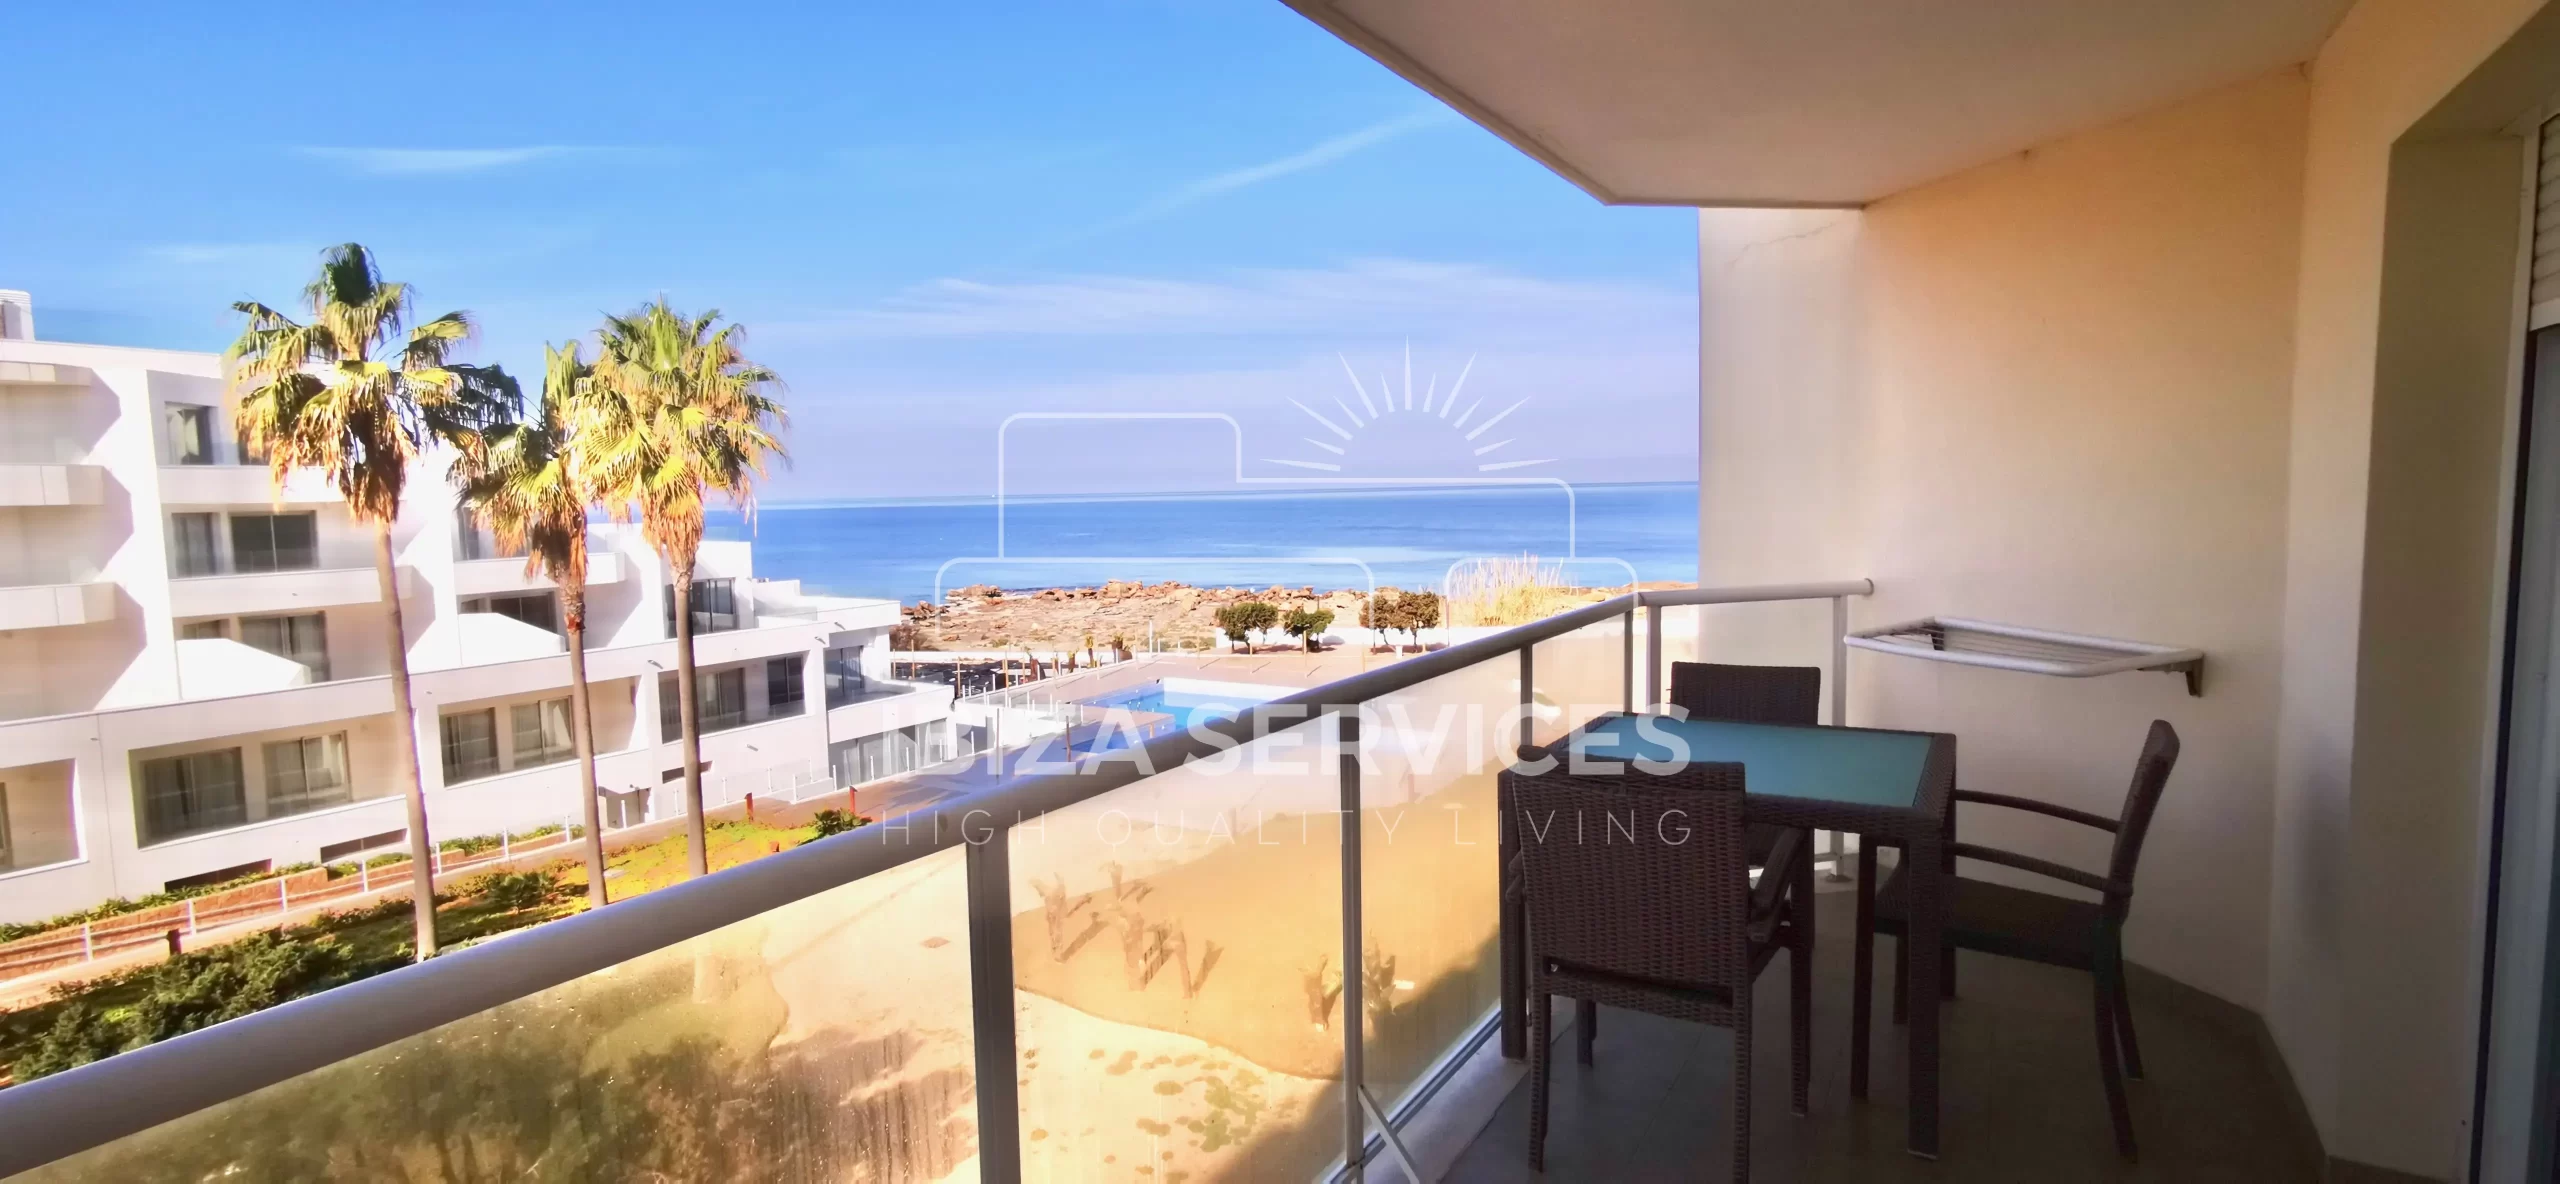 Appartement spacieux avec vue sur la mer à vendre sur la côte ouest d’Ibiza.